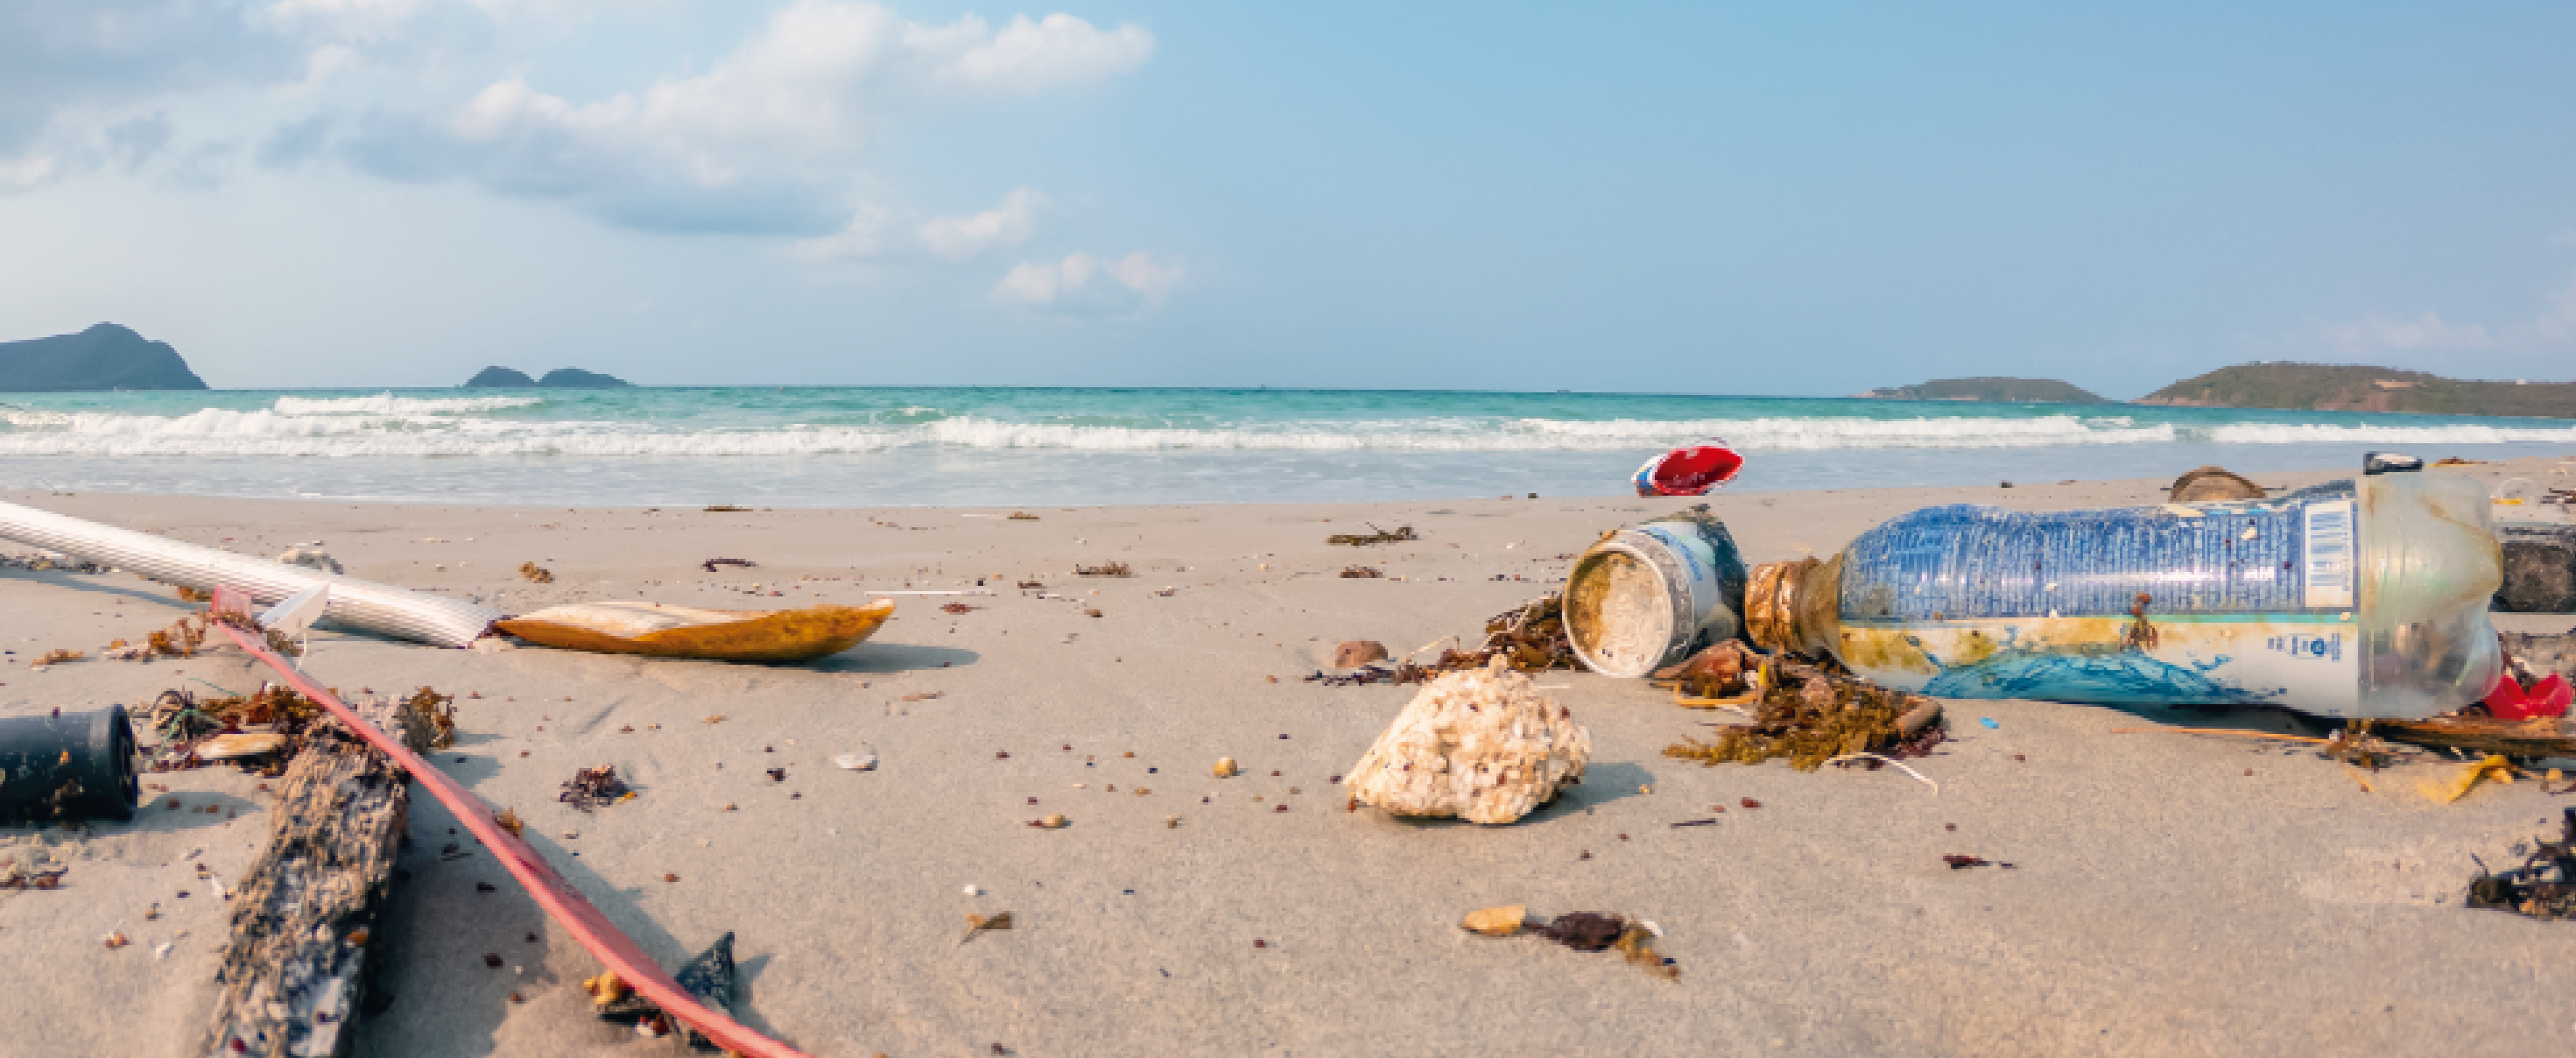 El ecosistema marino, en vilo por la mano humana: caso de basuras en playas de San Andrés